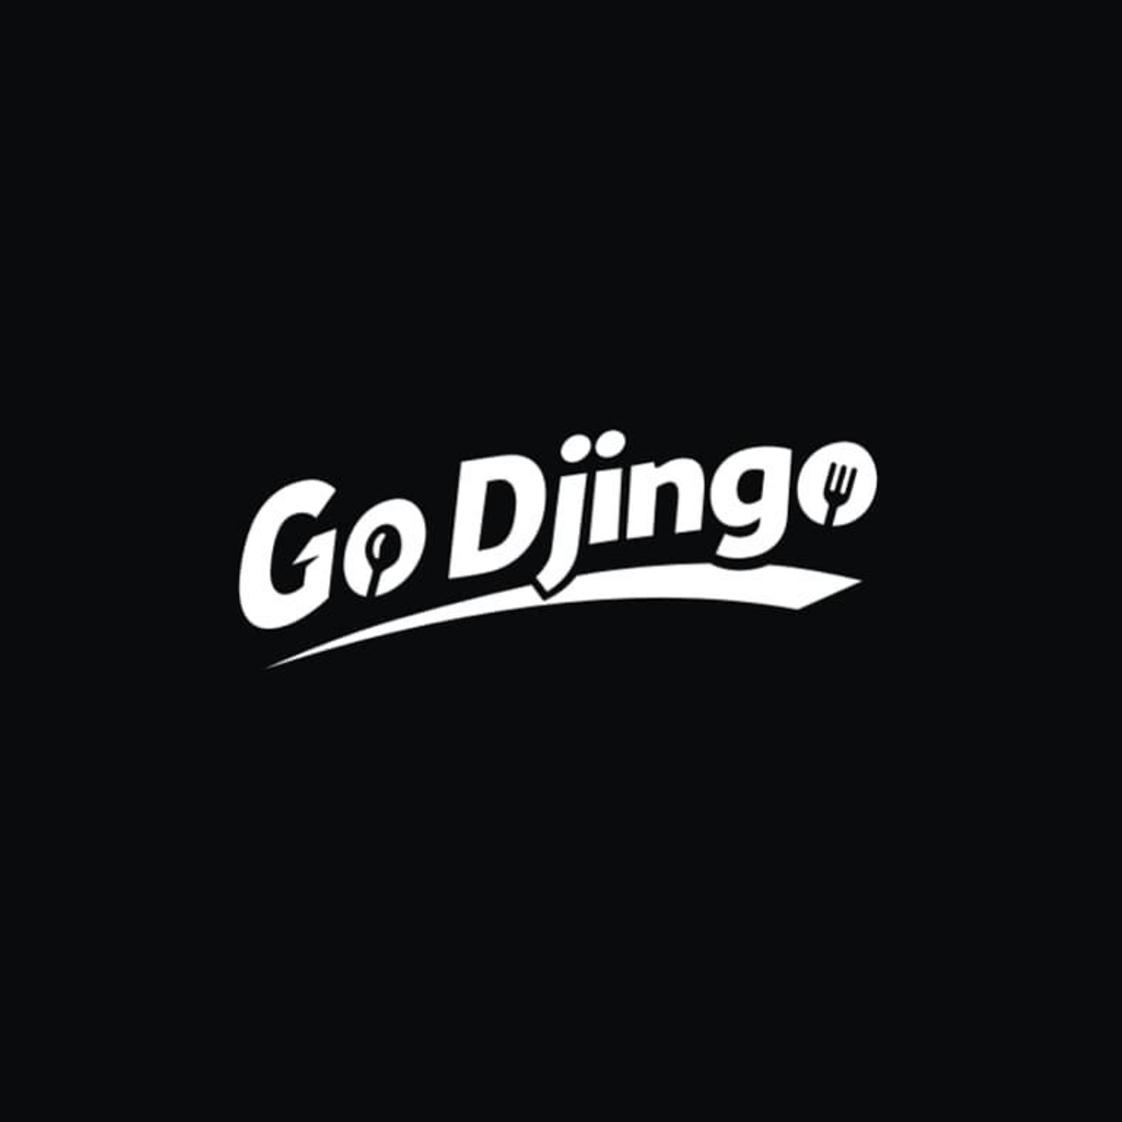 转让商标-GO DJINGO